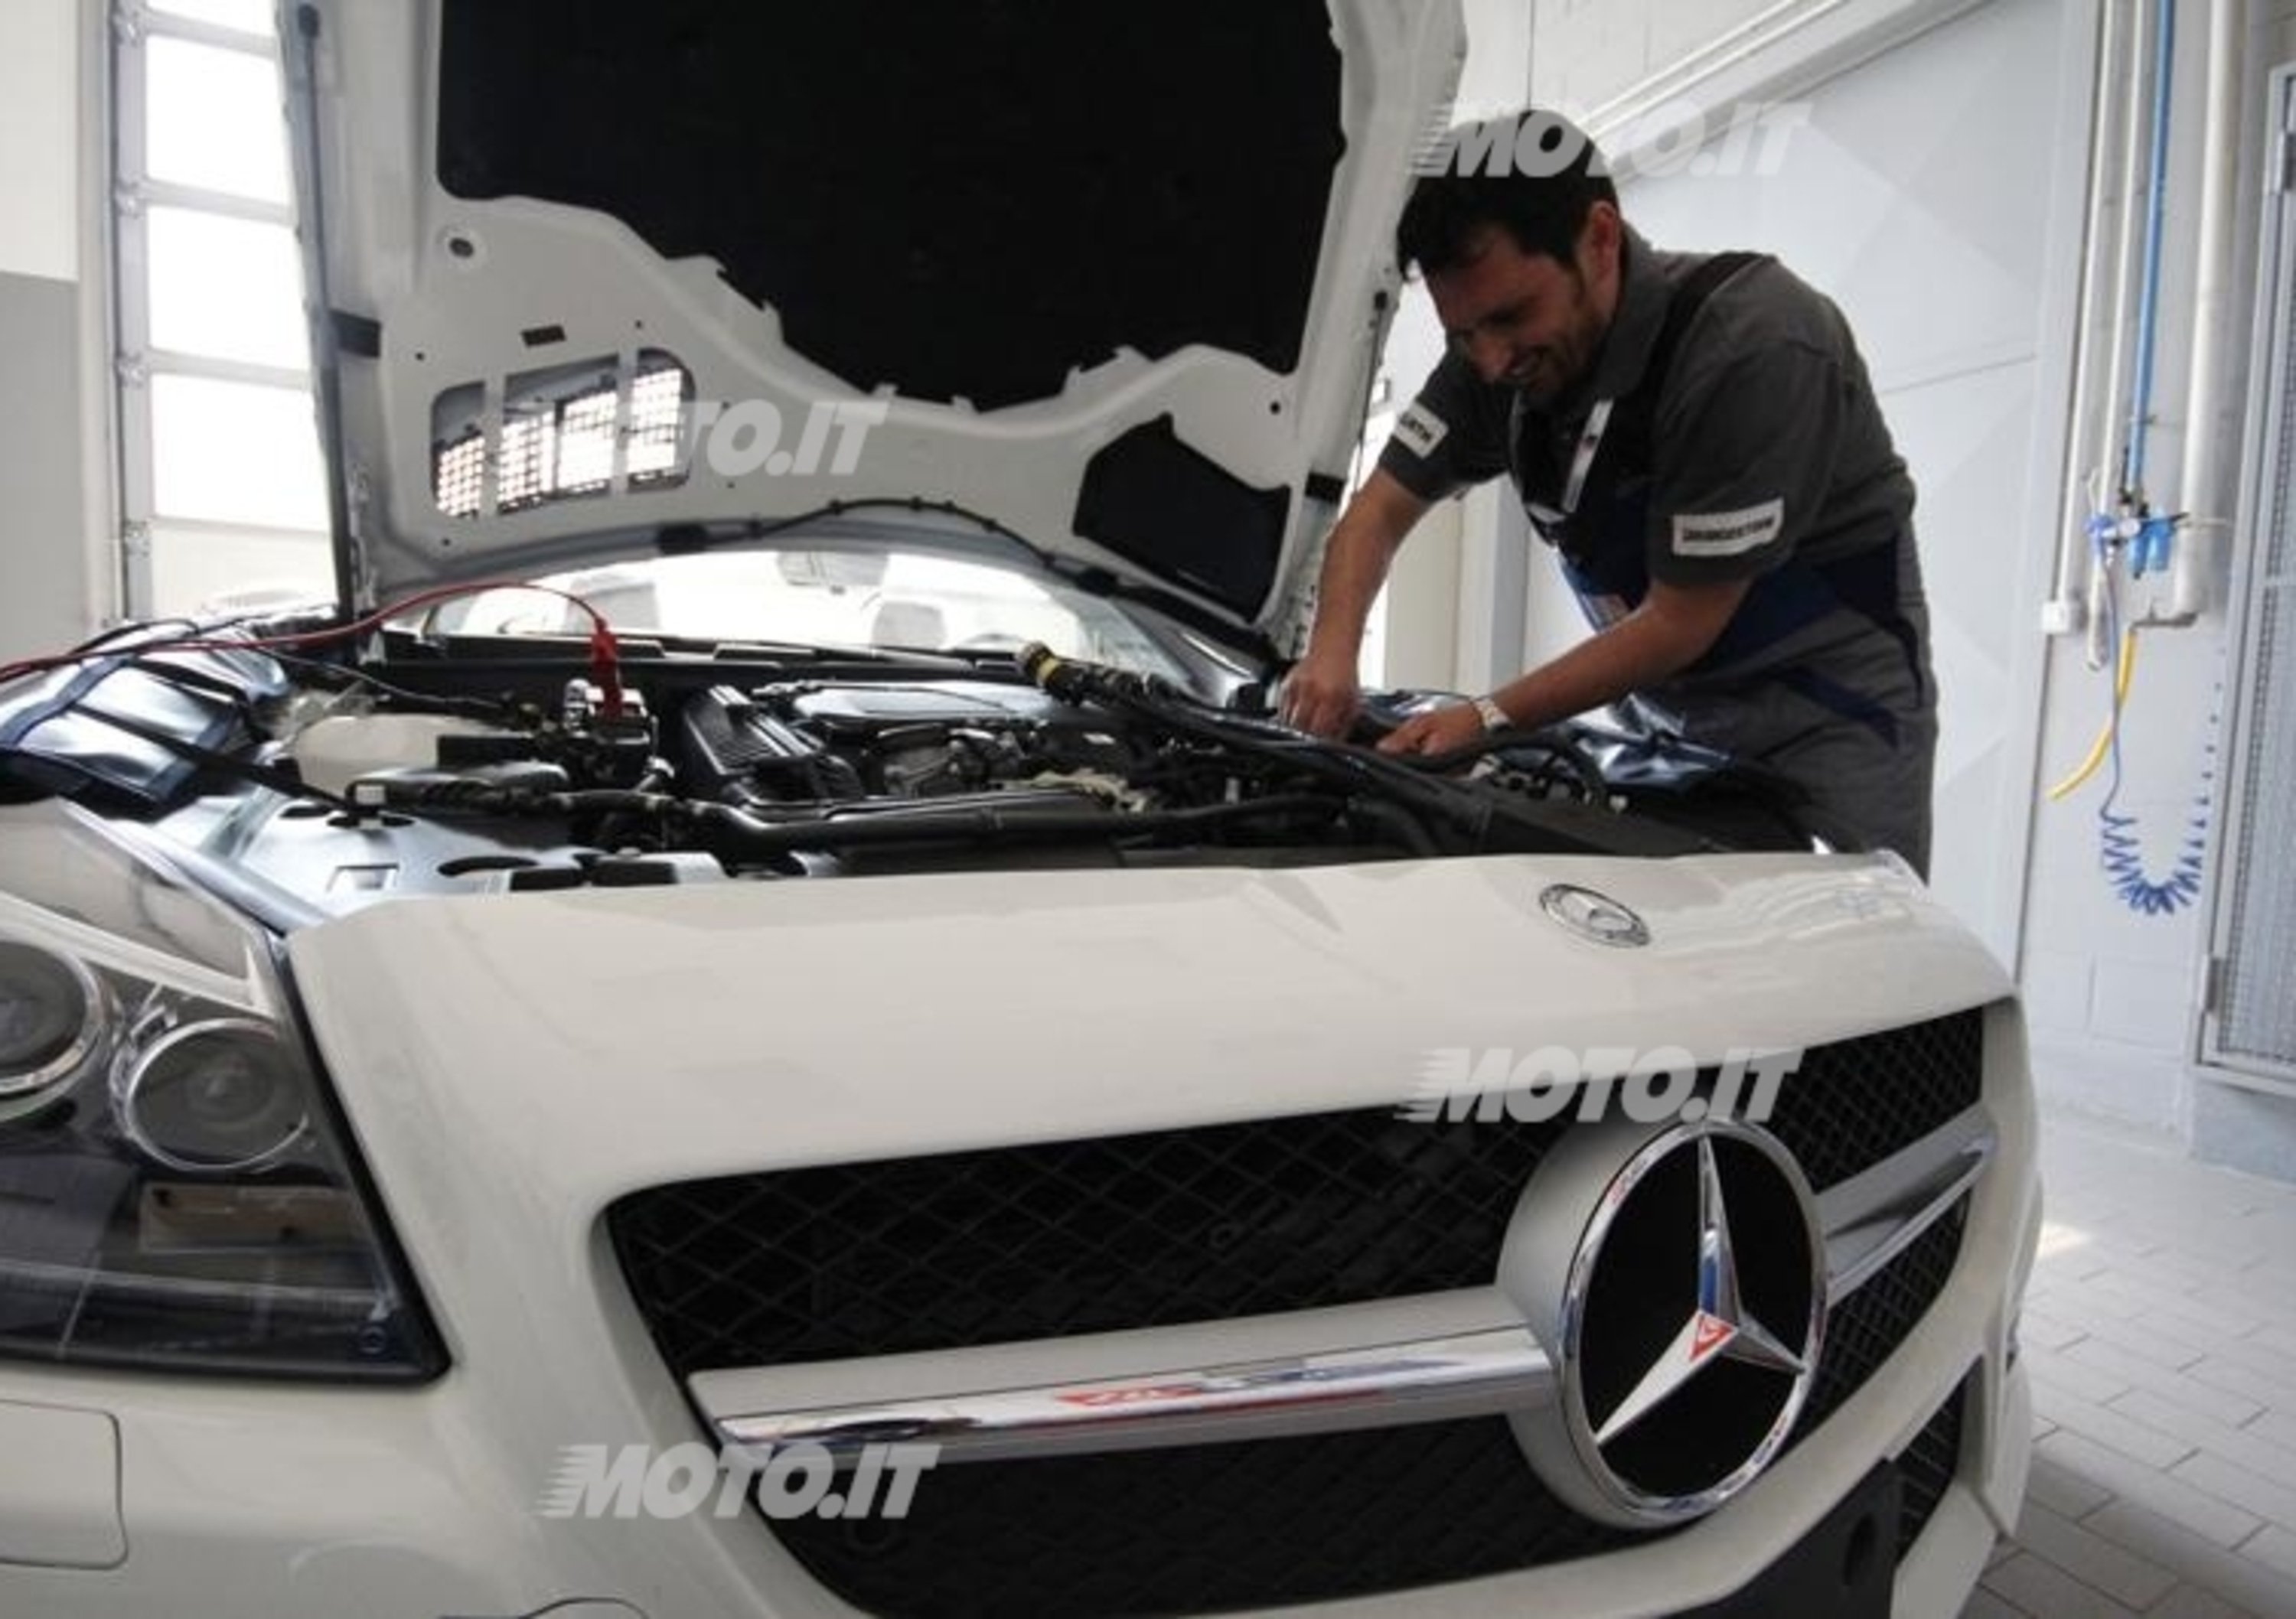 Mercedes-Benz TechMasters Cars Italia 2012: la finale nazionale